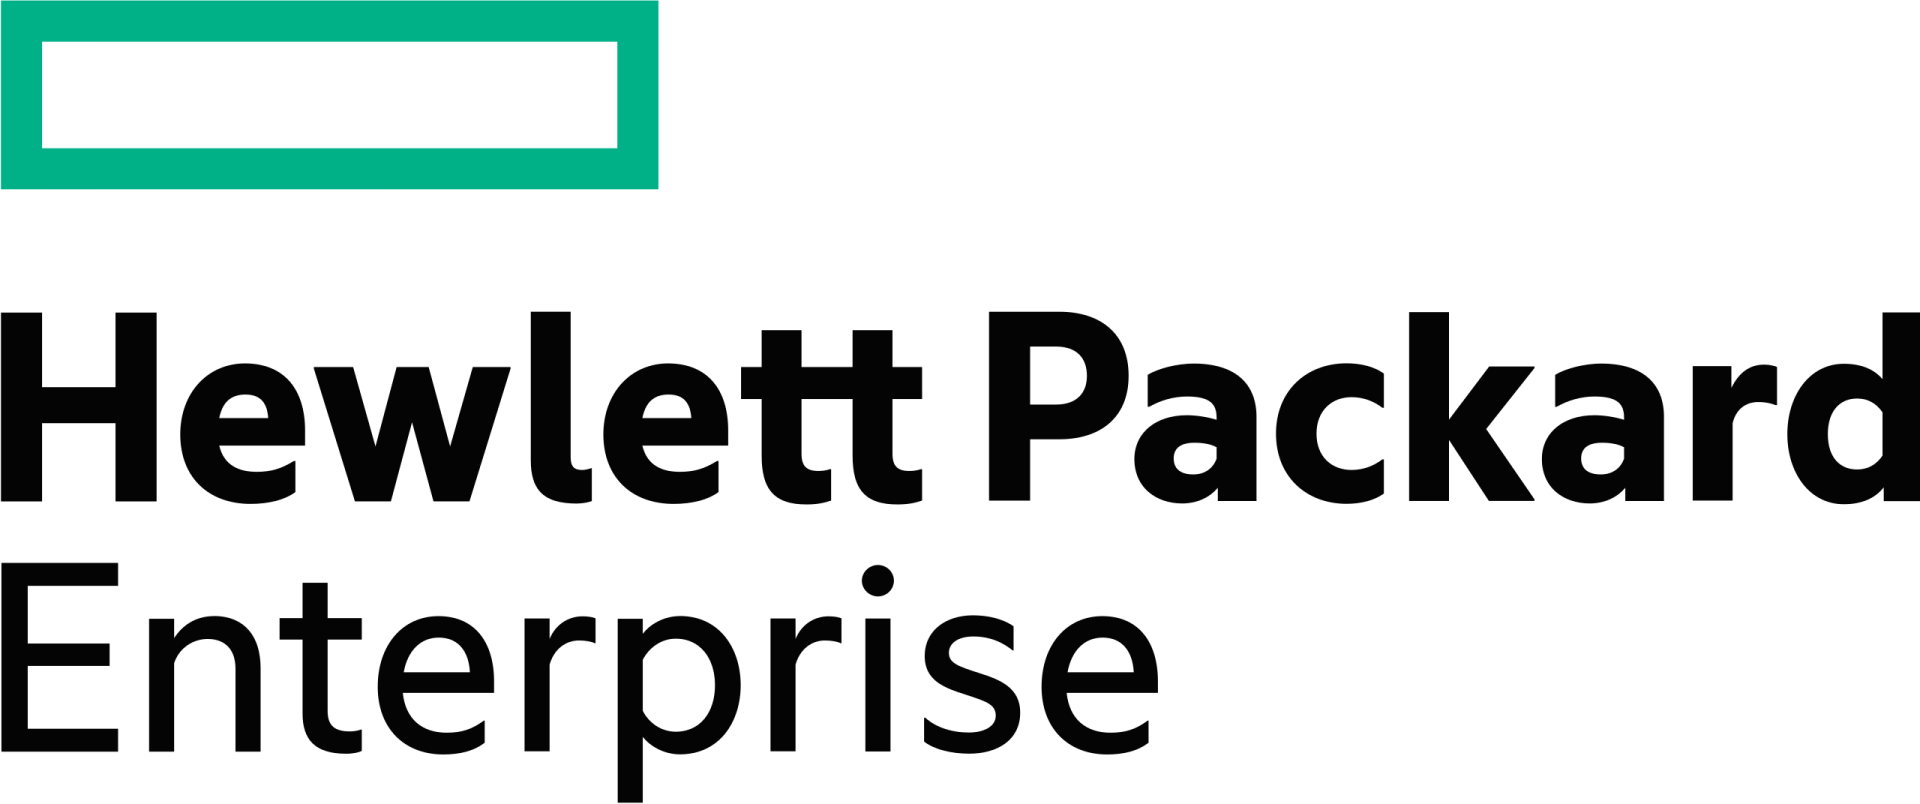 Hewlett Packard Enterprise logo.svg 2 - reload systems Fournisseur indépendant d’équipements d’infrastructure et solutions IT